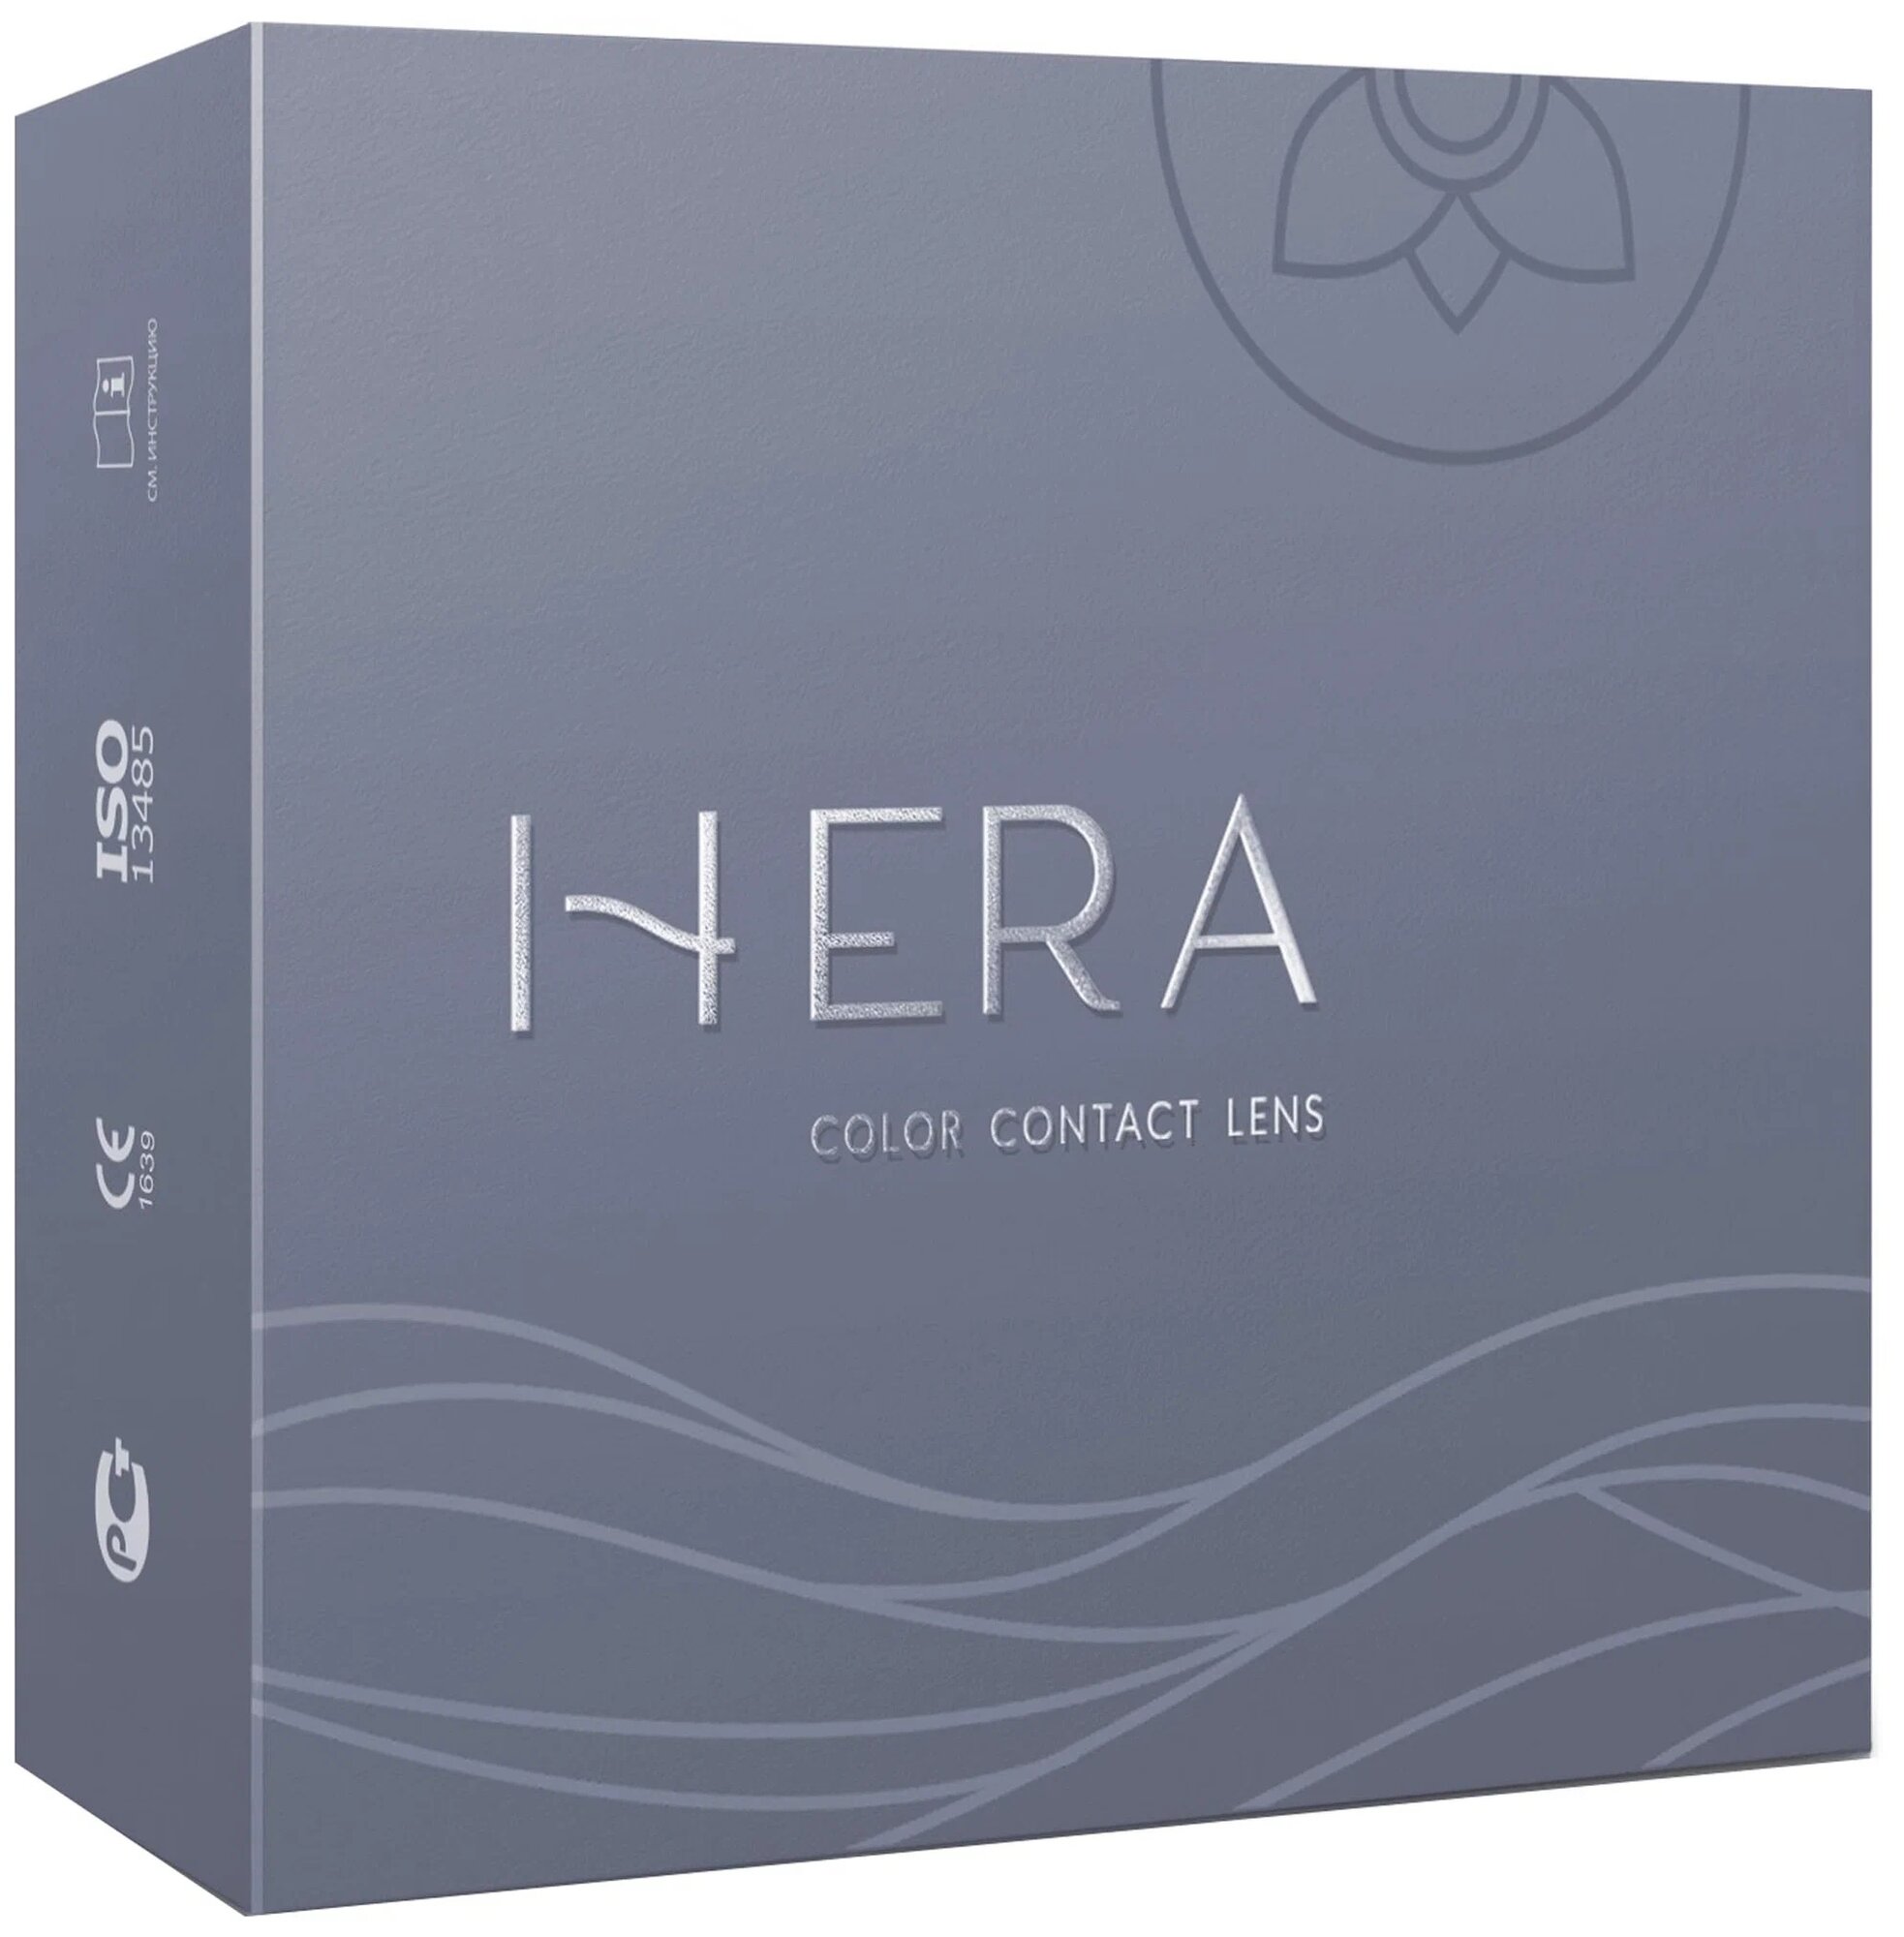 Hera Two-Tone Party 2 линзы В упаковке 2 штуки Цвет Blue Оптическая сила -3.5 Радиус кривизны 8.6